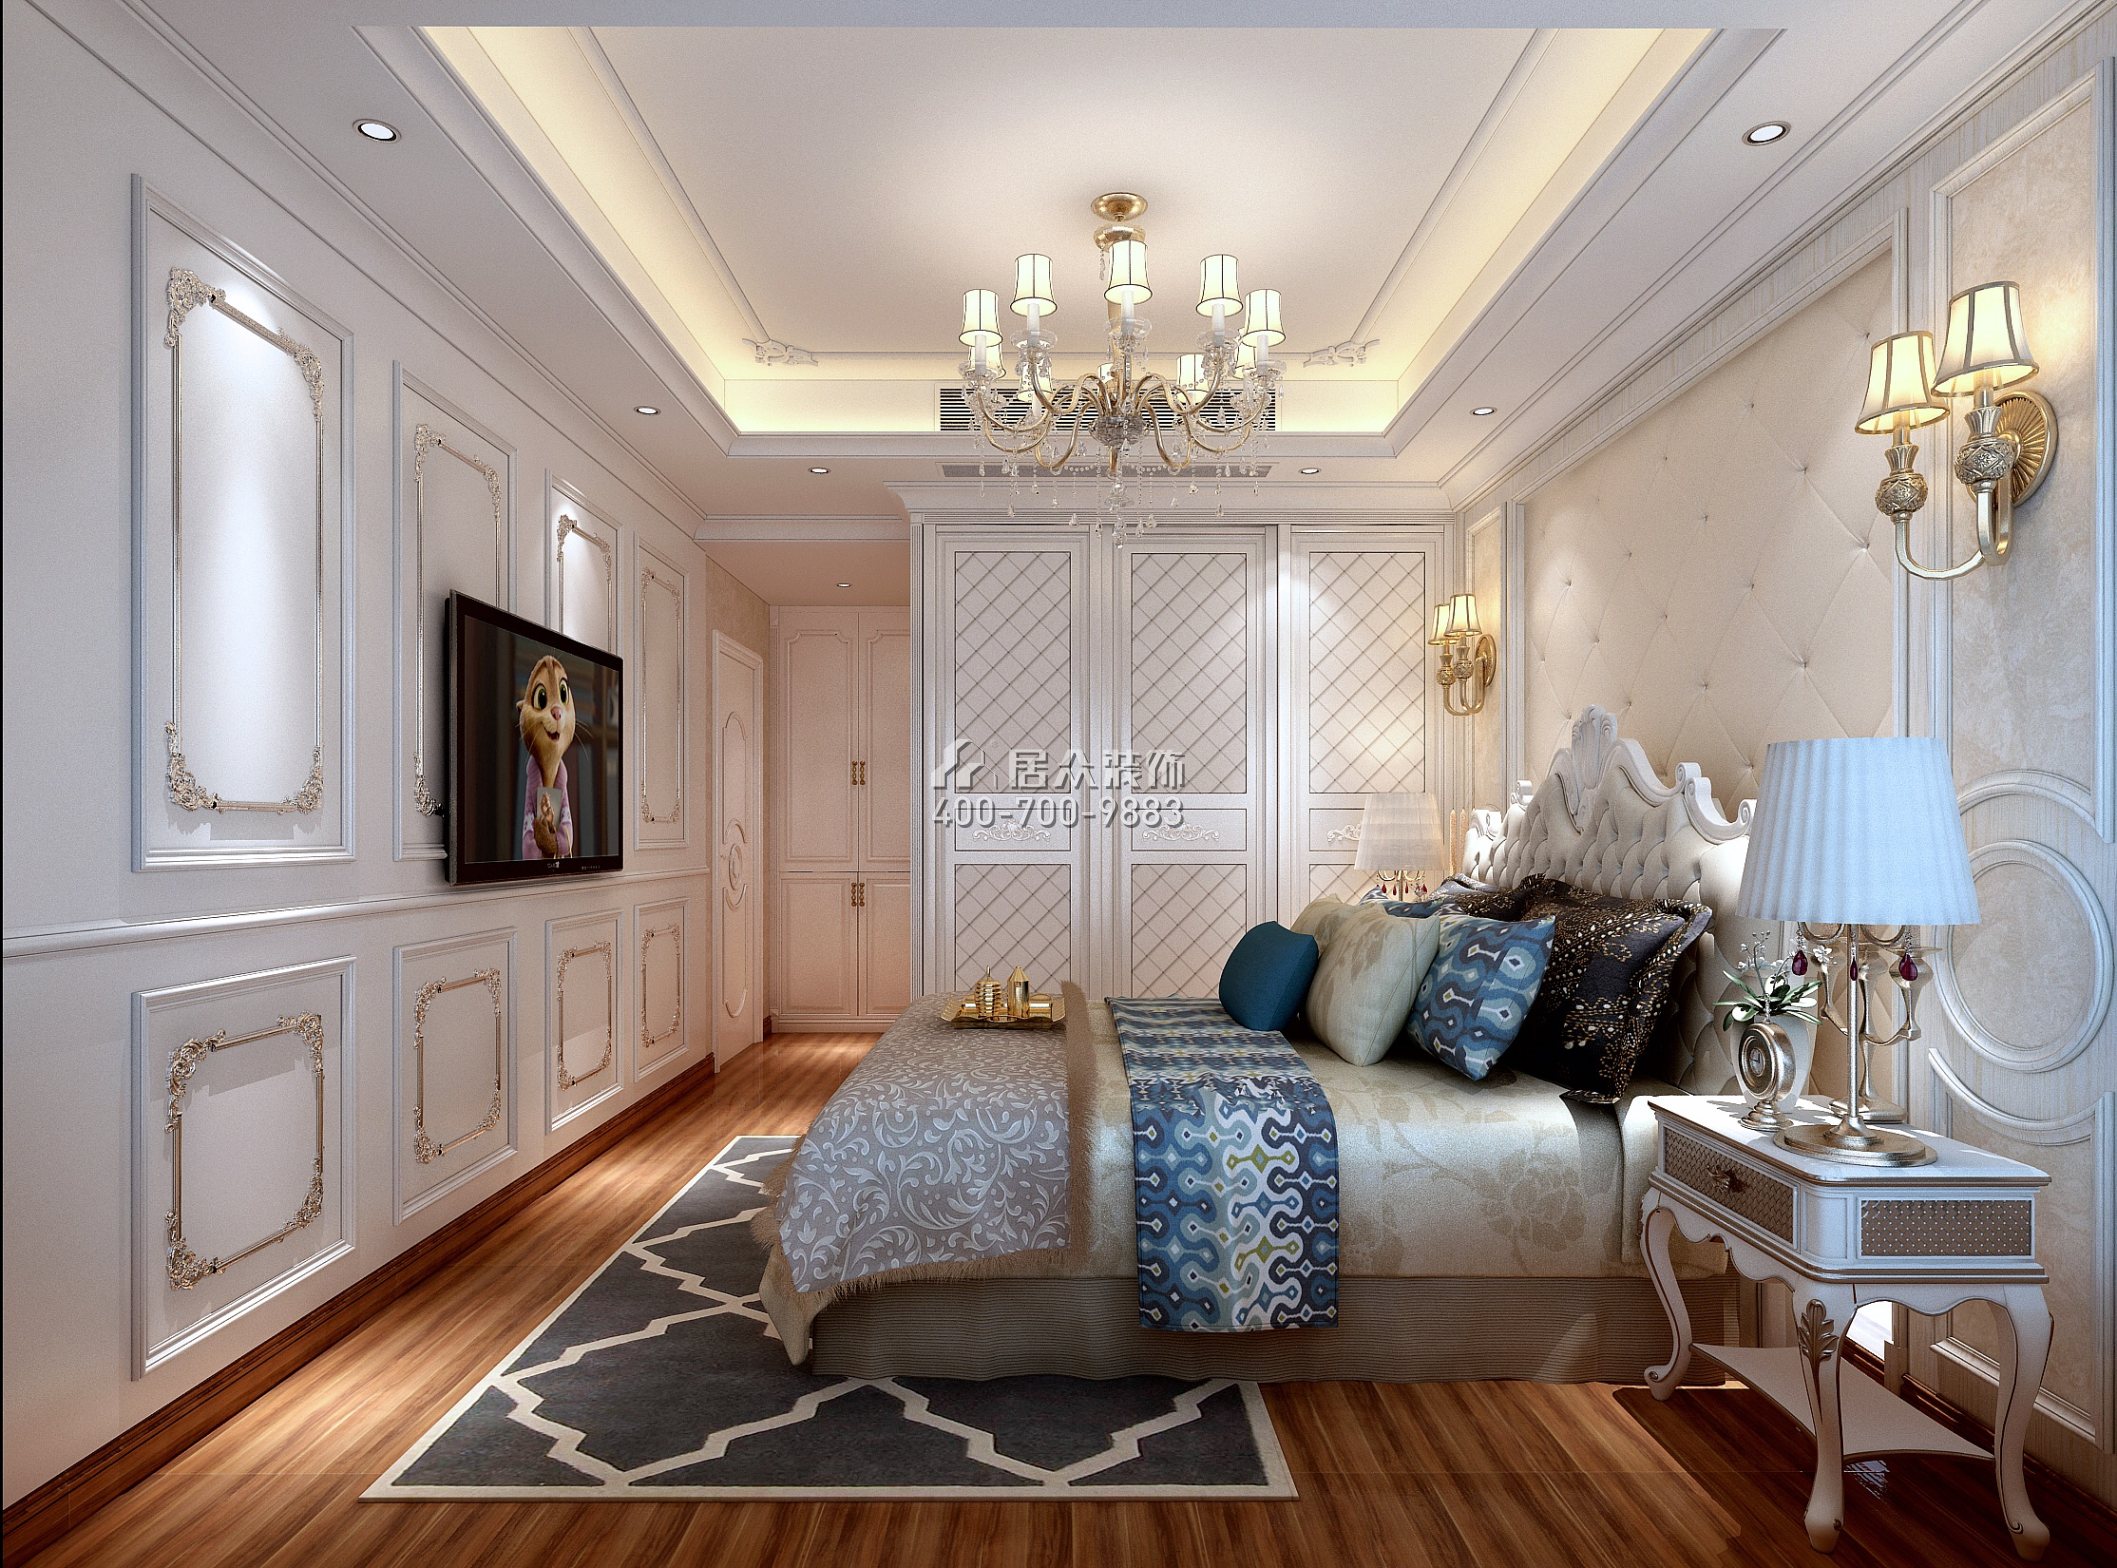 華盛·西薈城4期138平方米歐式風格平層戶型臥室裝修效果圖